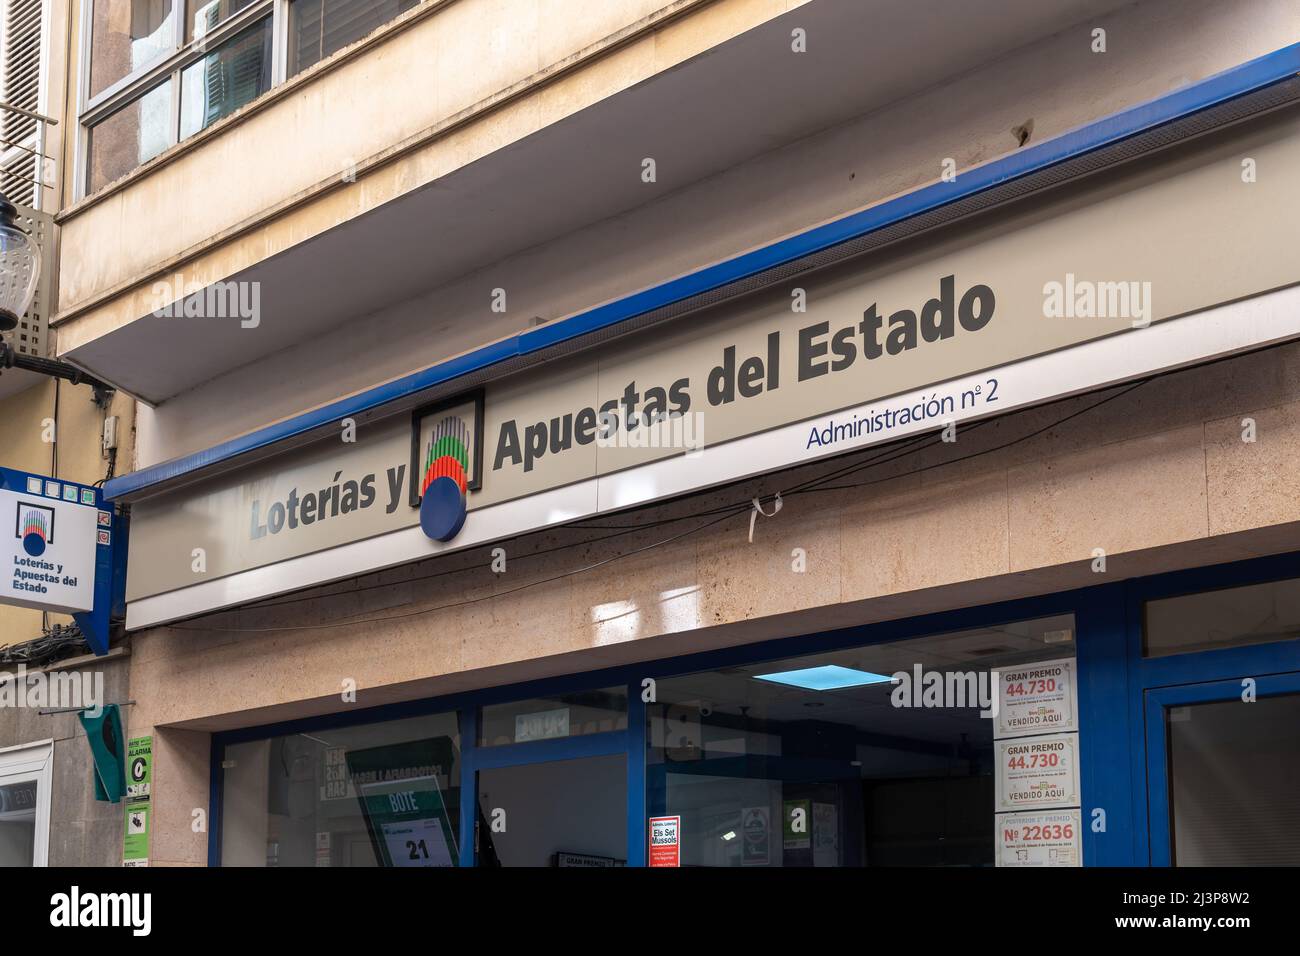 Felanitx, Spain; april 07 2022: Main facade of a Loterias y Apuestas del Estado establishment, in the Mallorcan town of Felanitx, Spain Stock Photo